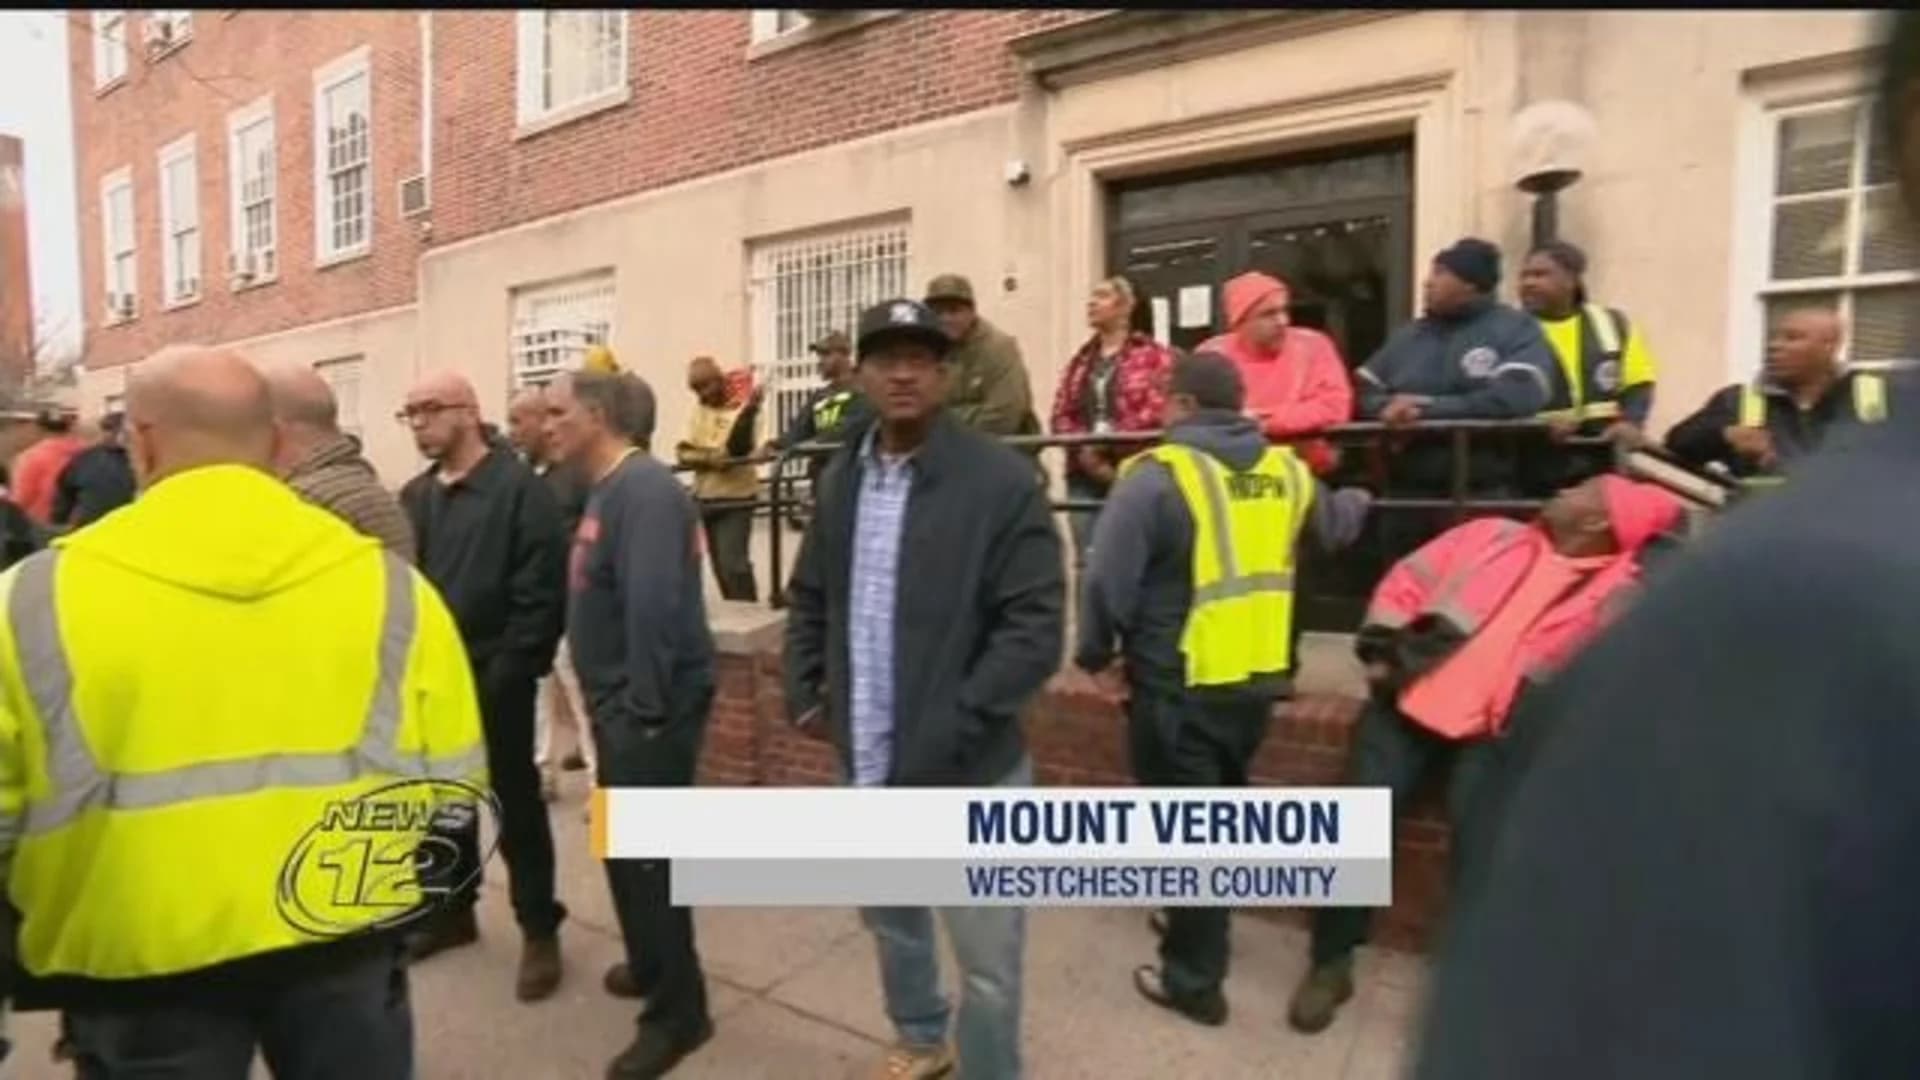 Mount Vernon DPW: "Enough is enough"